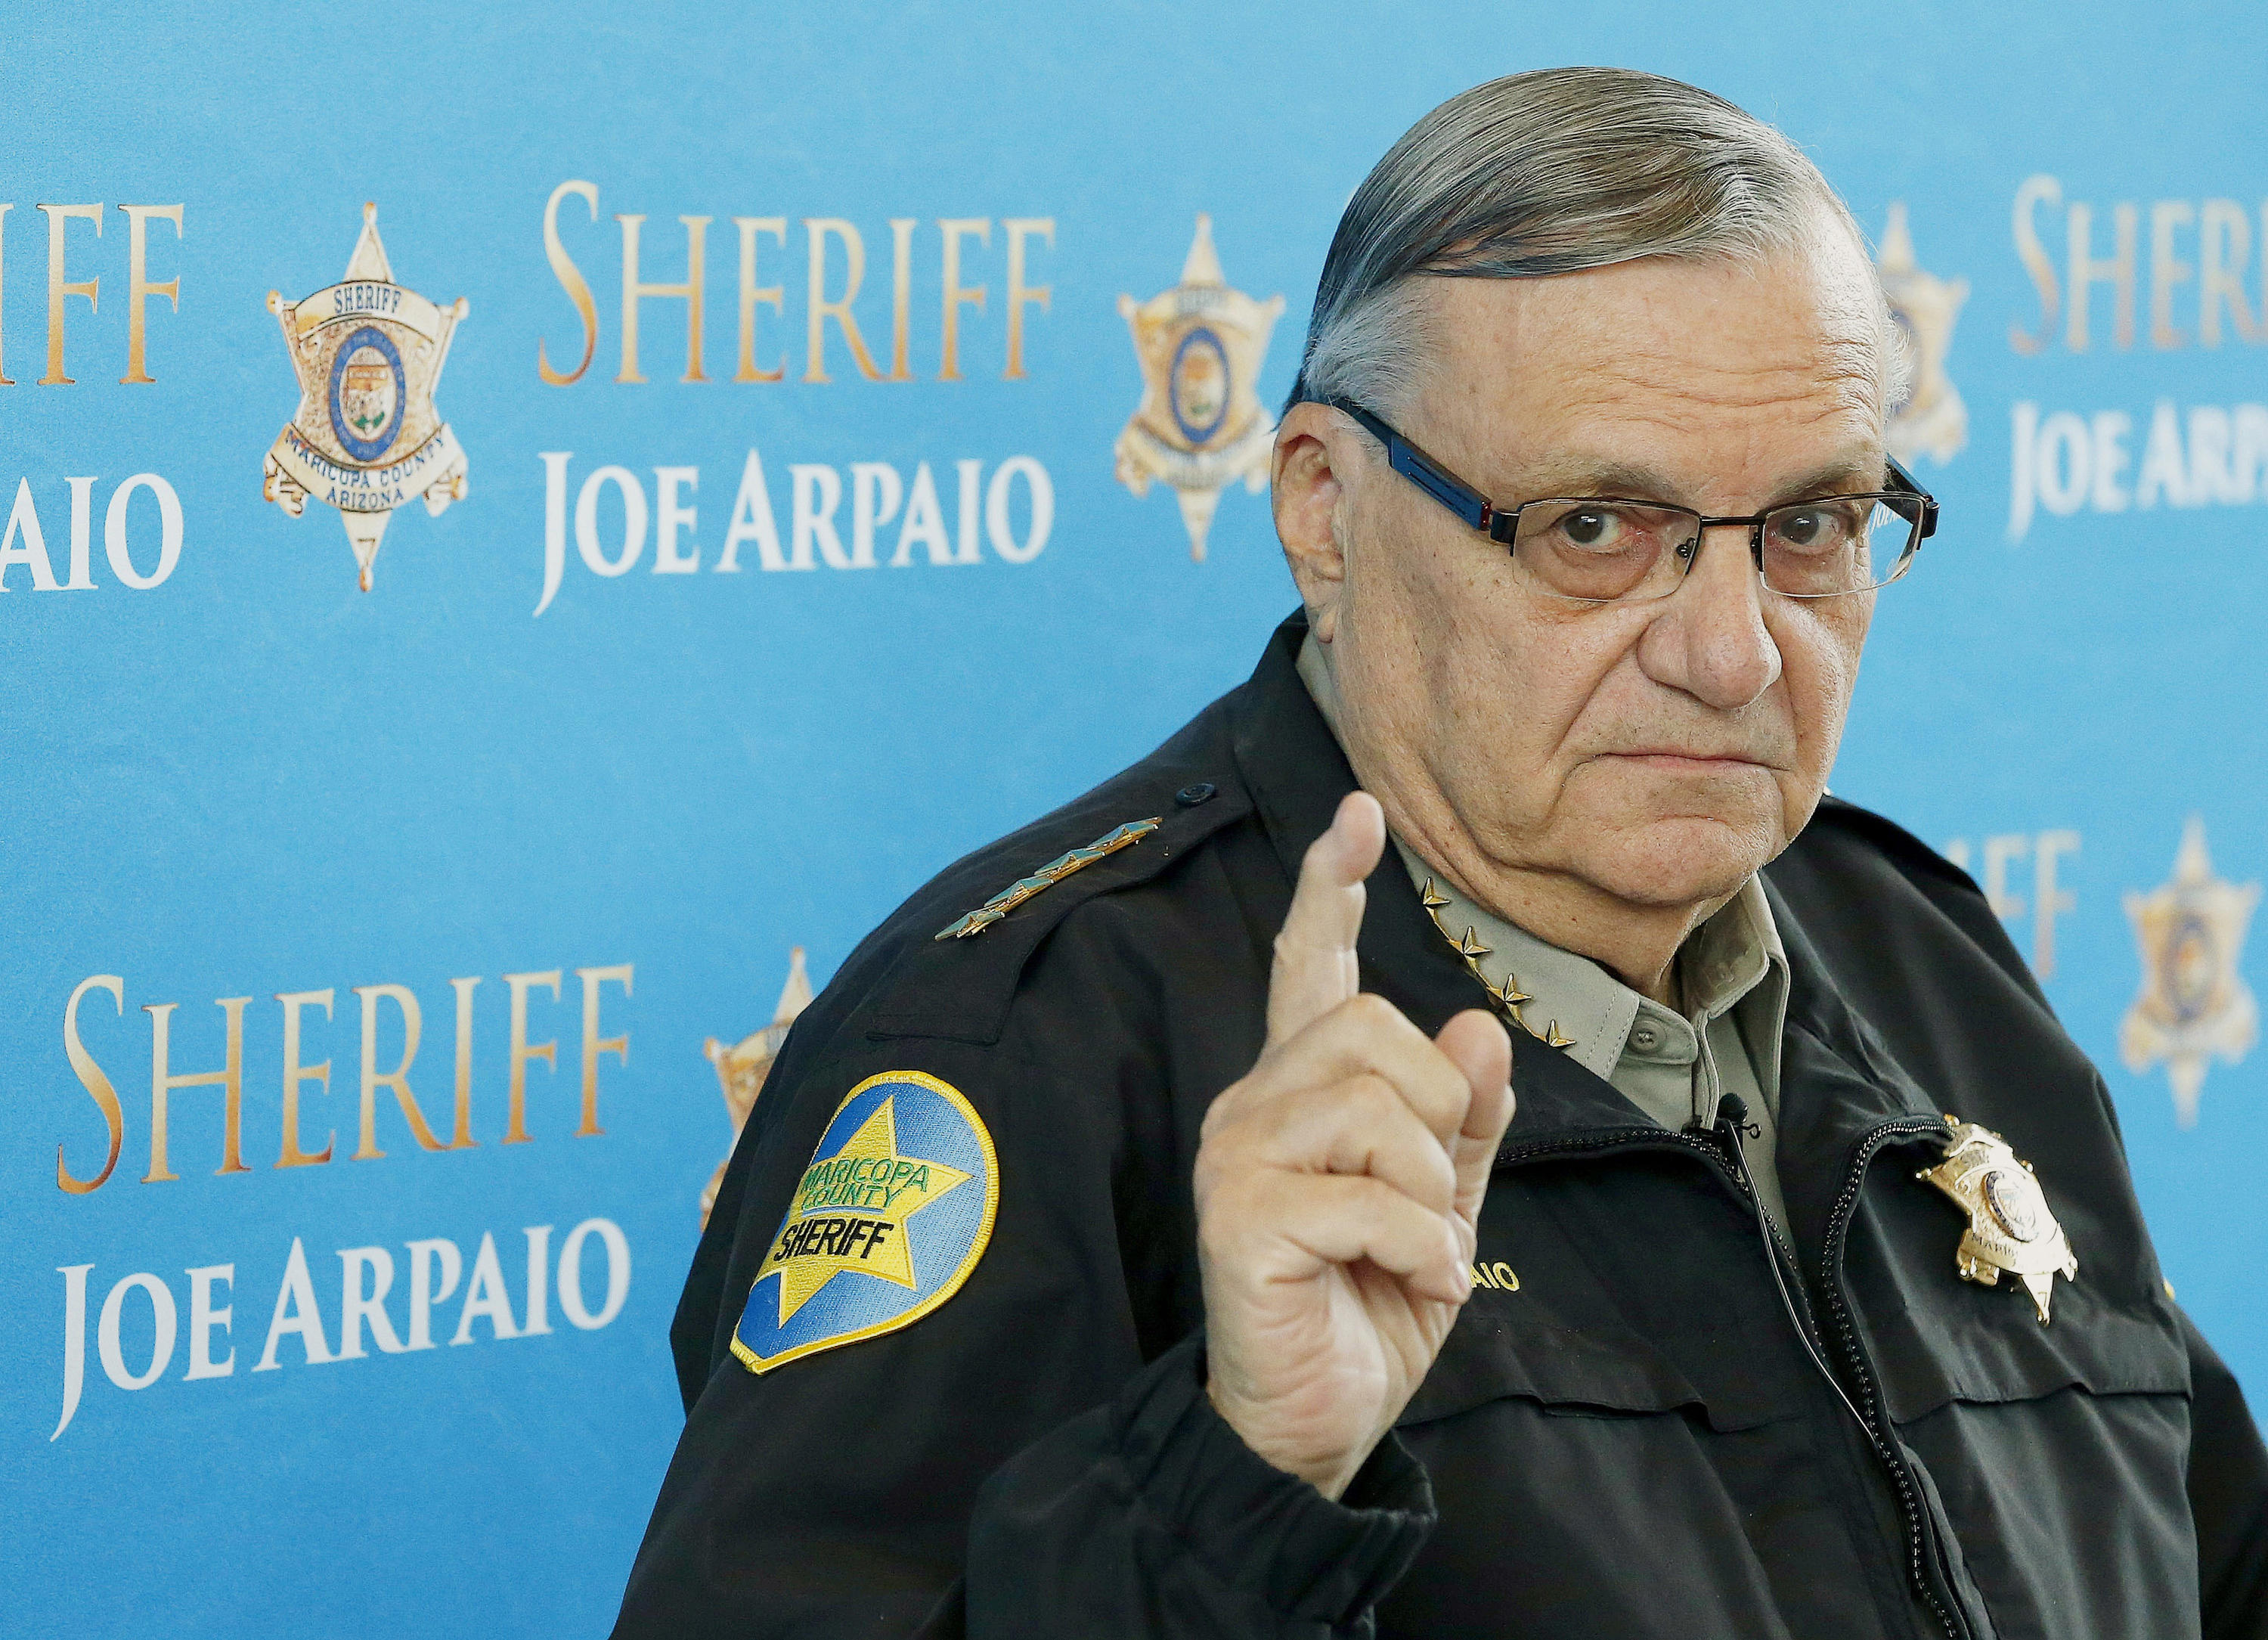 pic of Sheriff Joe Arpaio